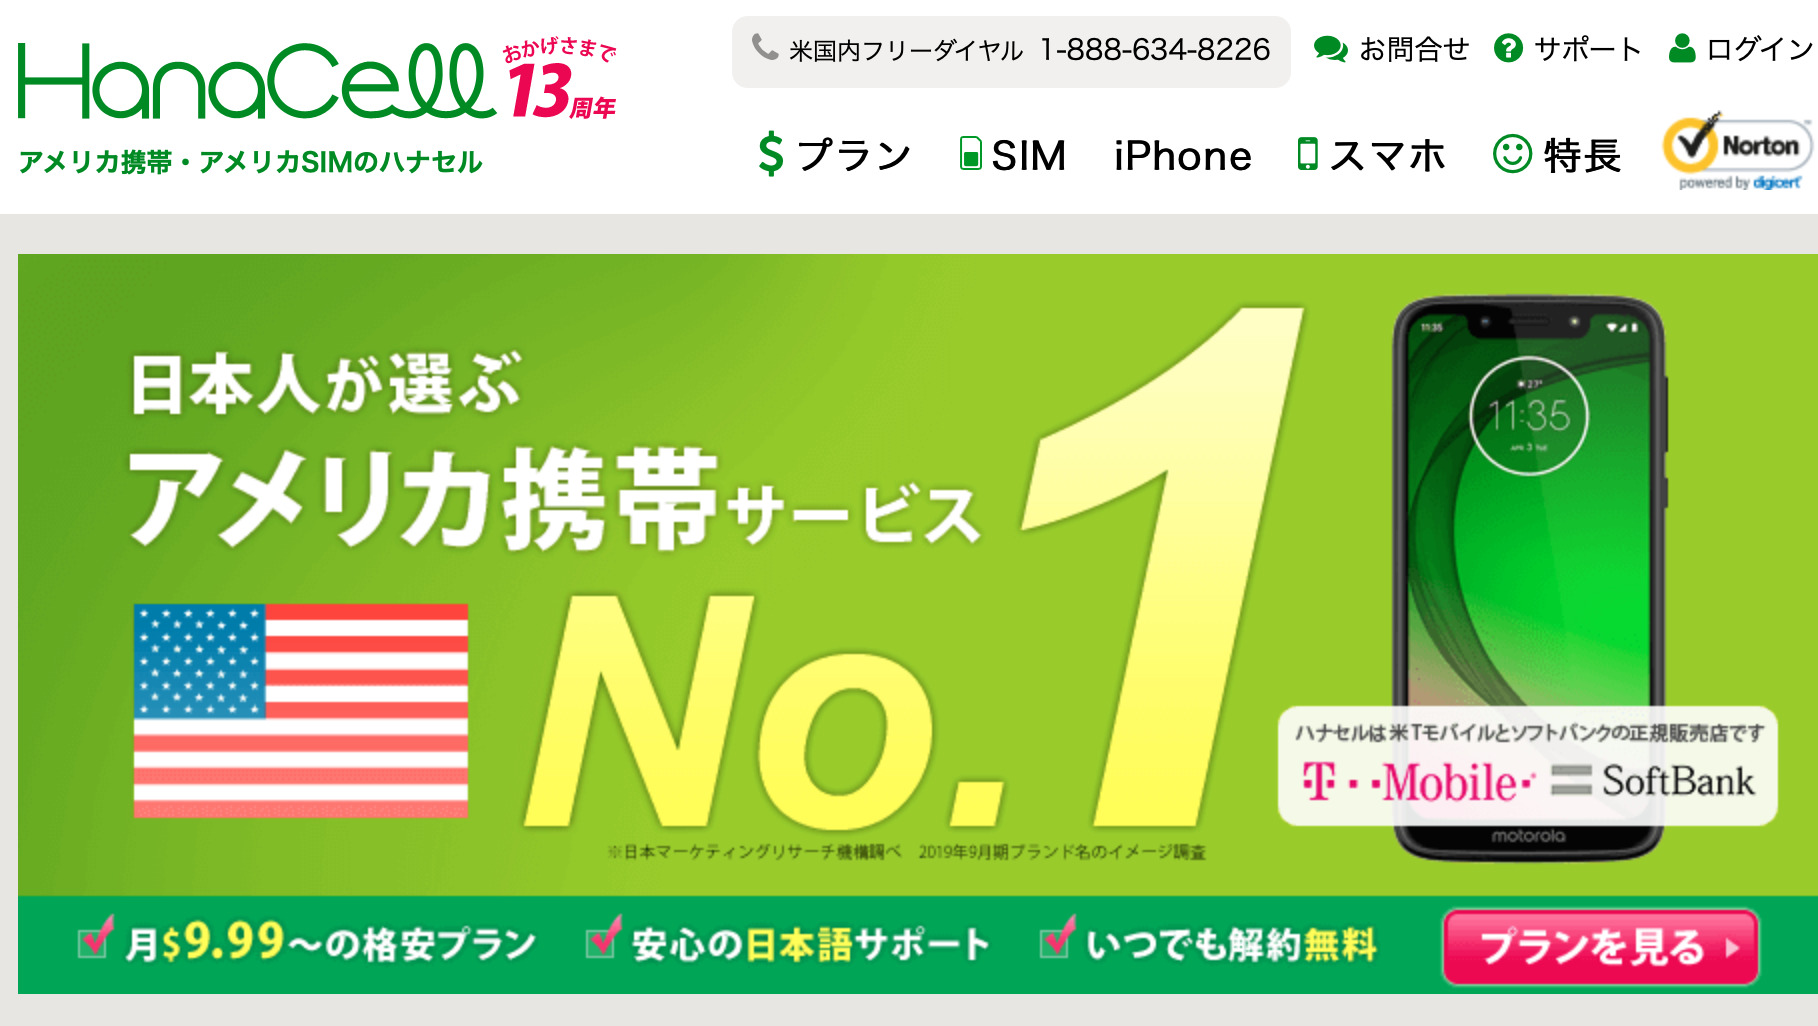 日本にいるうちに完結！アメリカで携帯を使うためのオススメSIM会社と手順を紹介